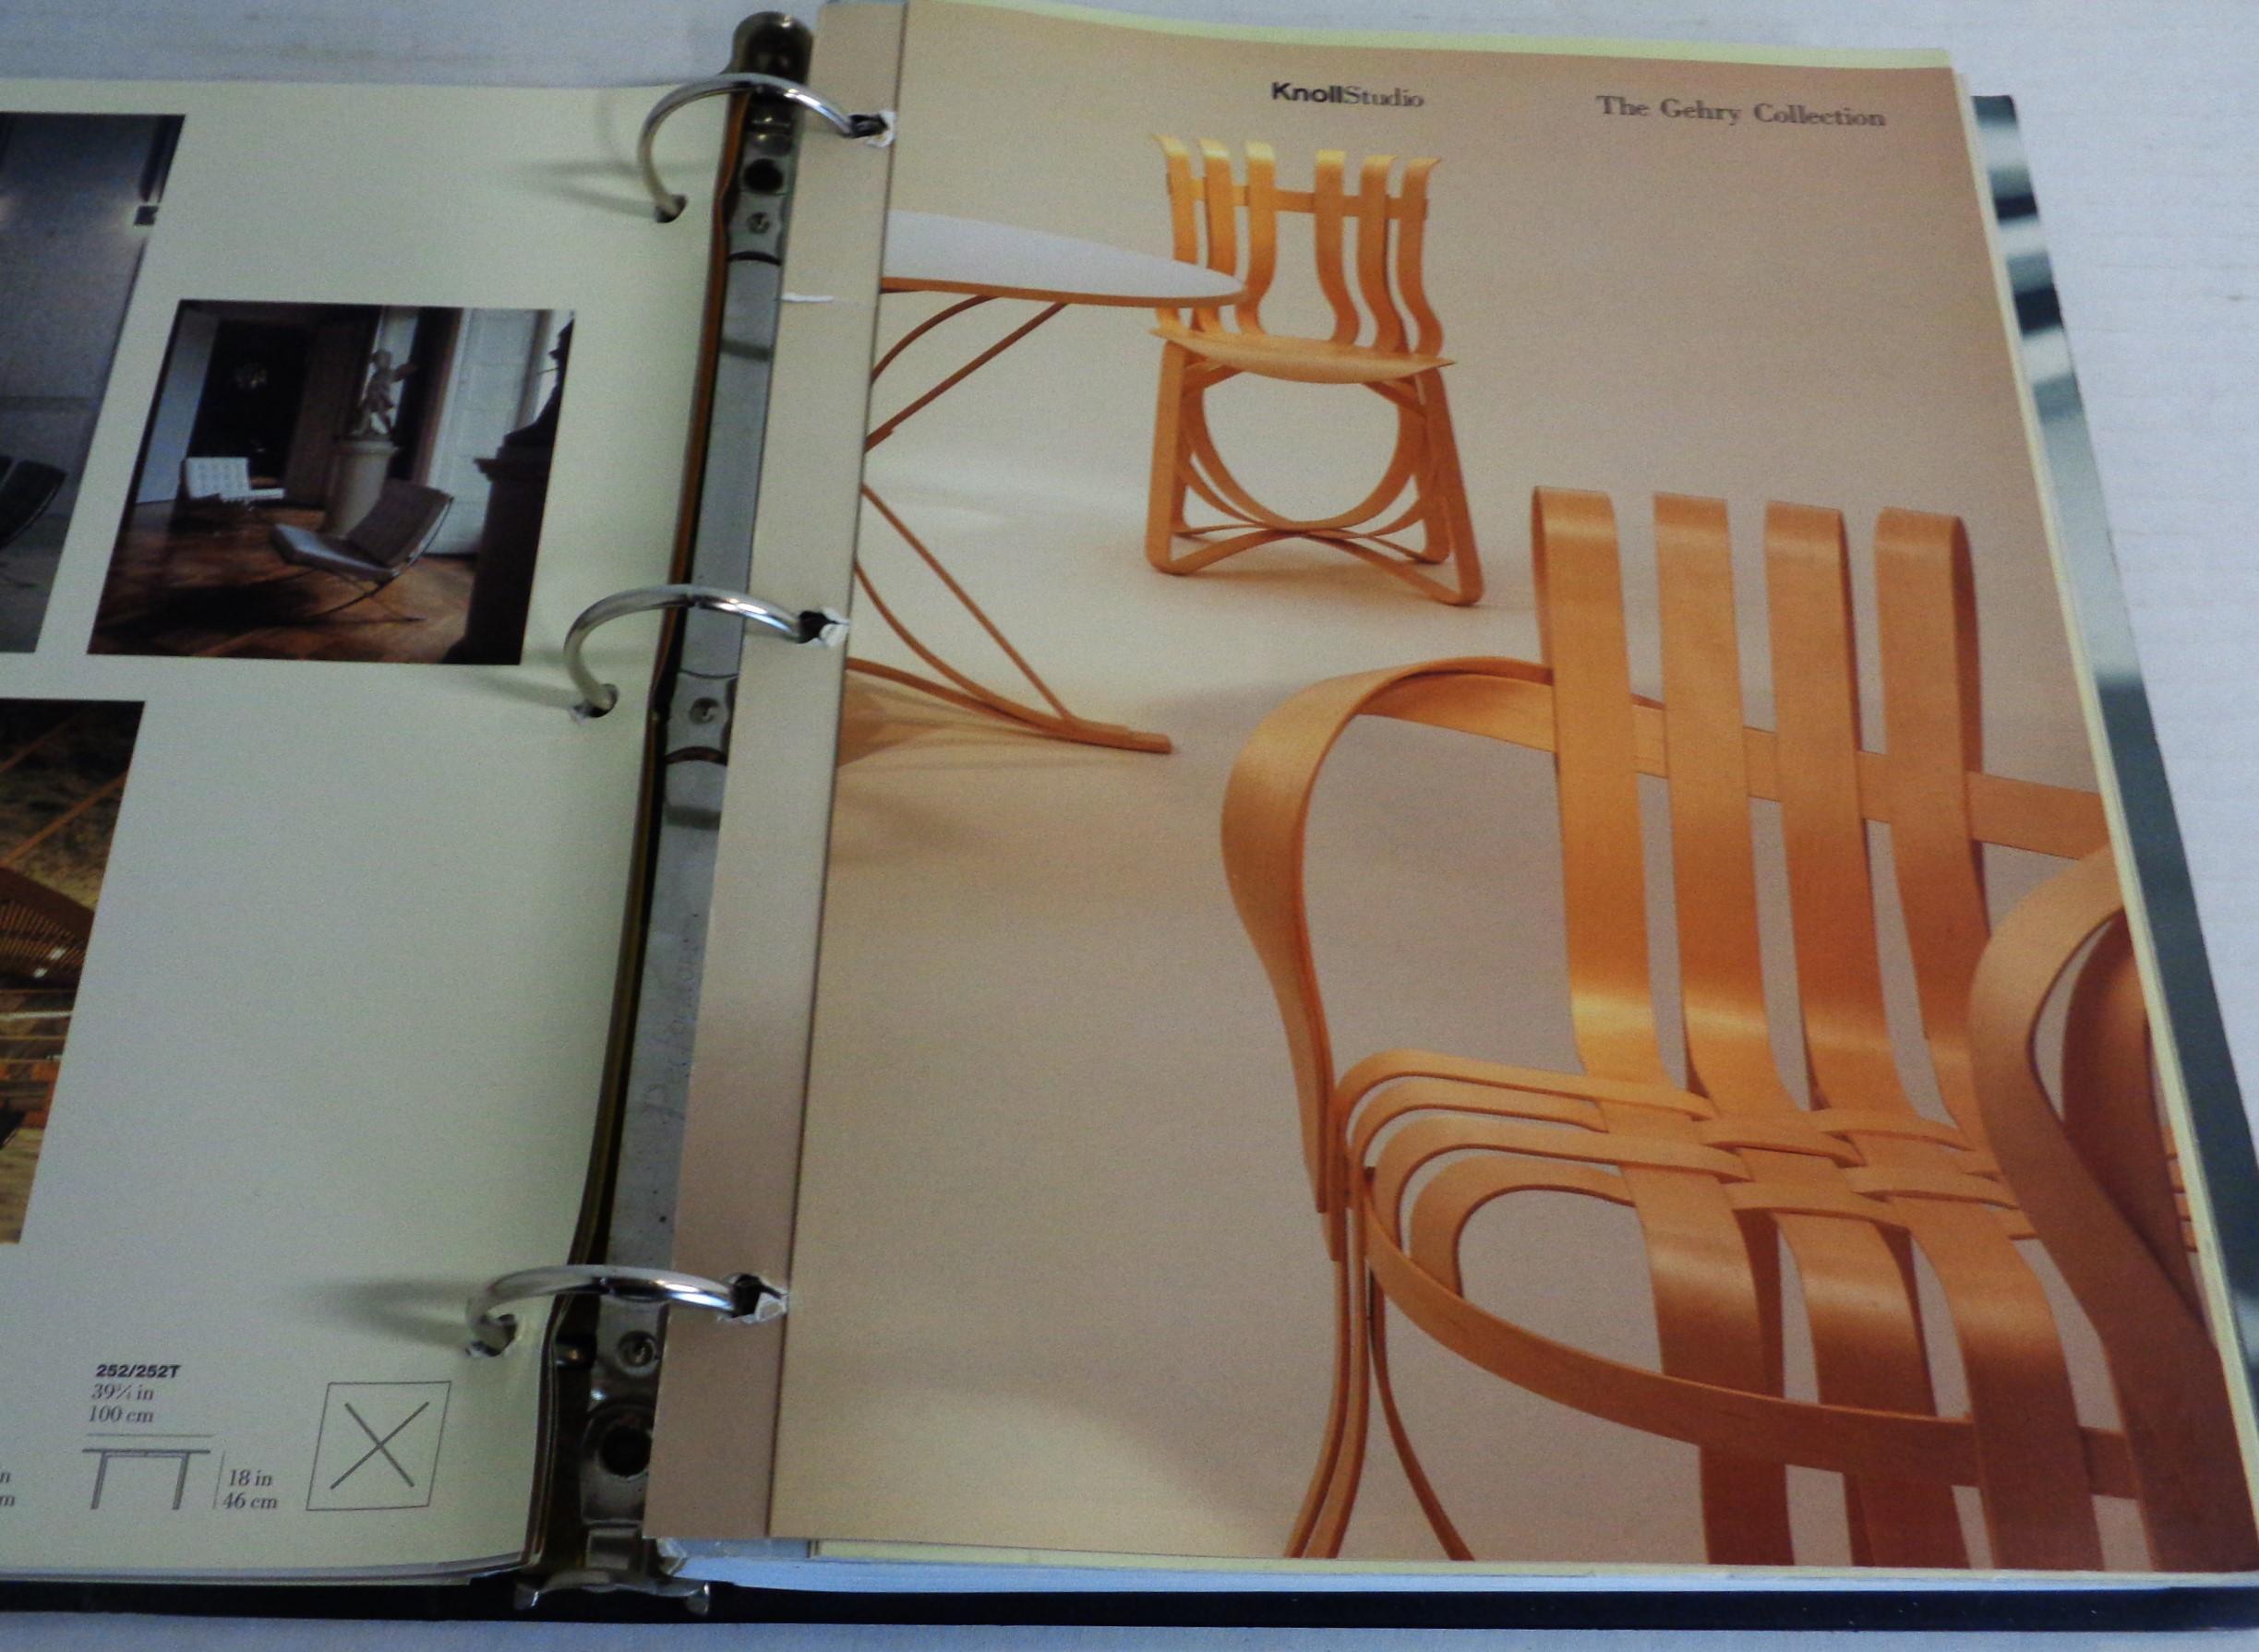 Américain Collection Knoll Studio - Binder - Catalogues - liste de prix - Année 2000 en vente